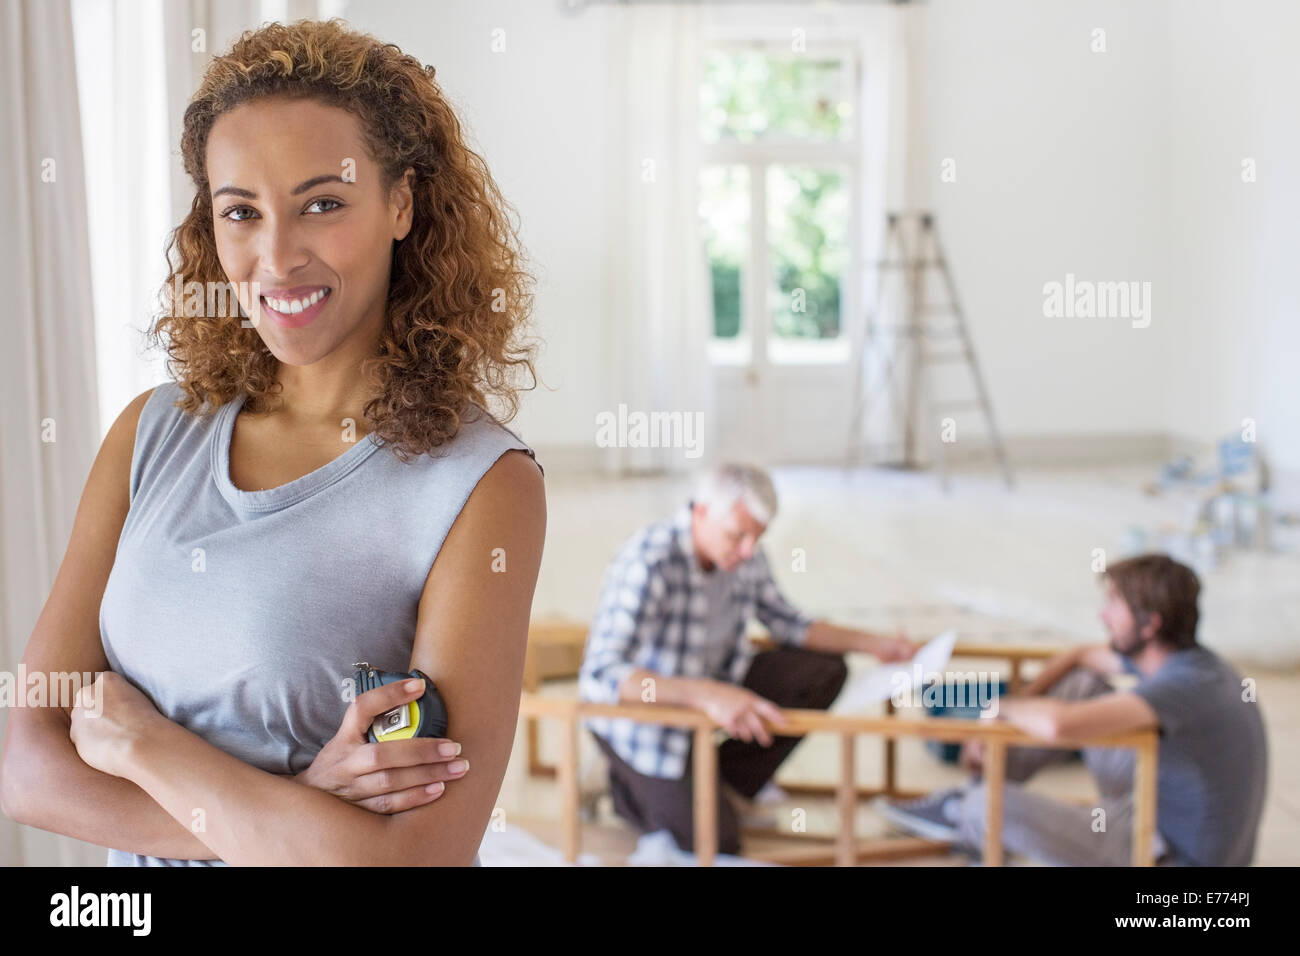 Woman smiling in vivant dans l'espace de travail de la famille Banque D'Images